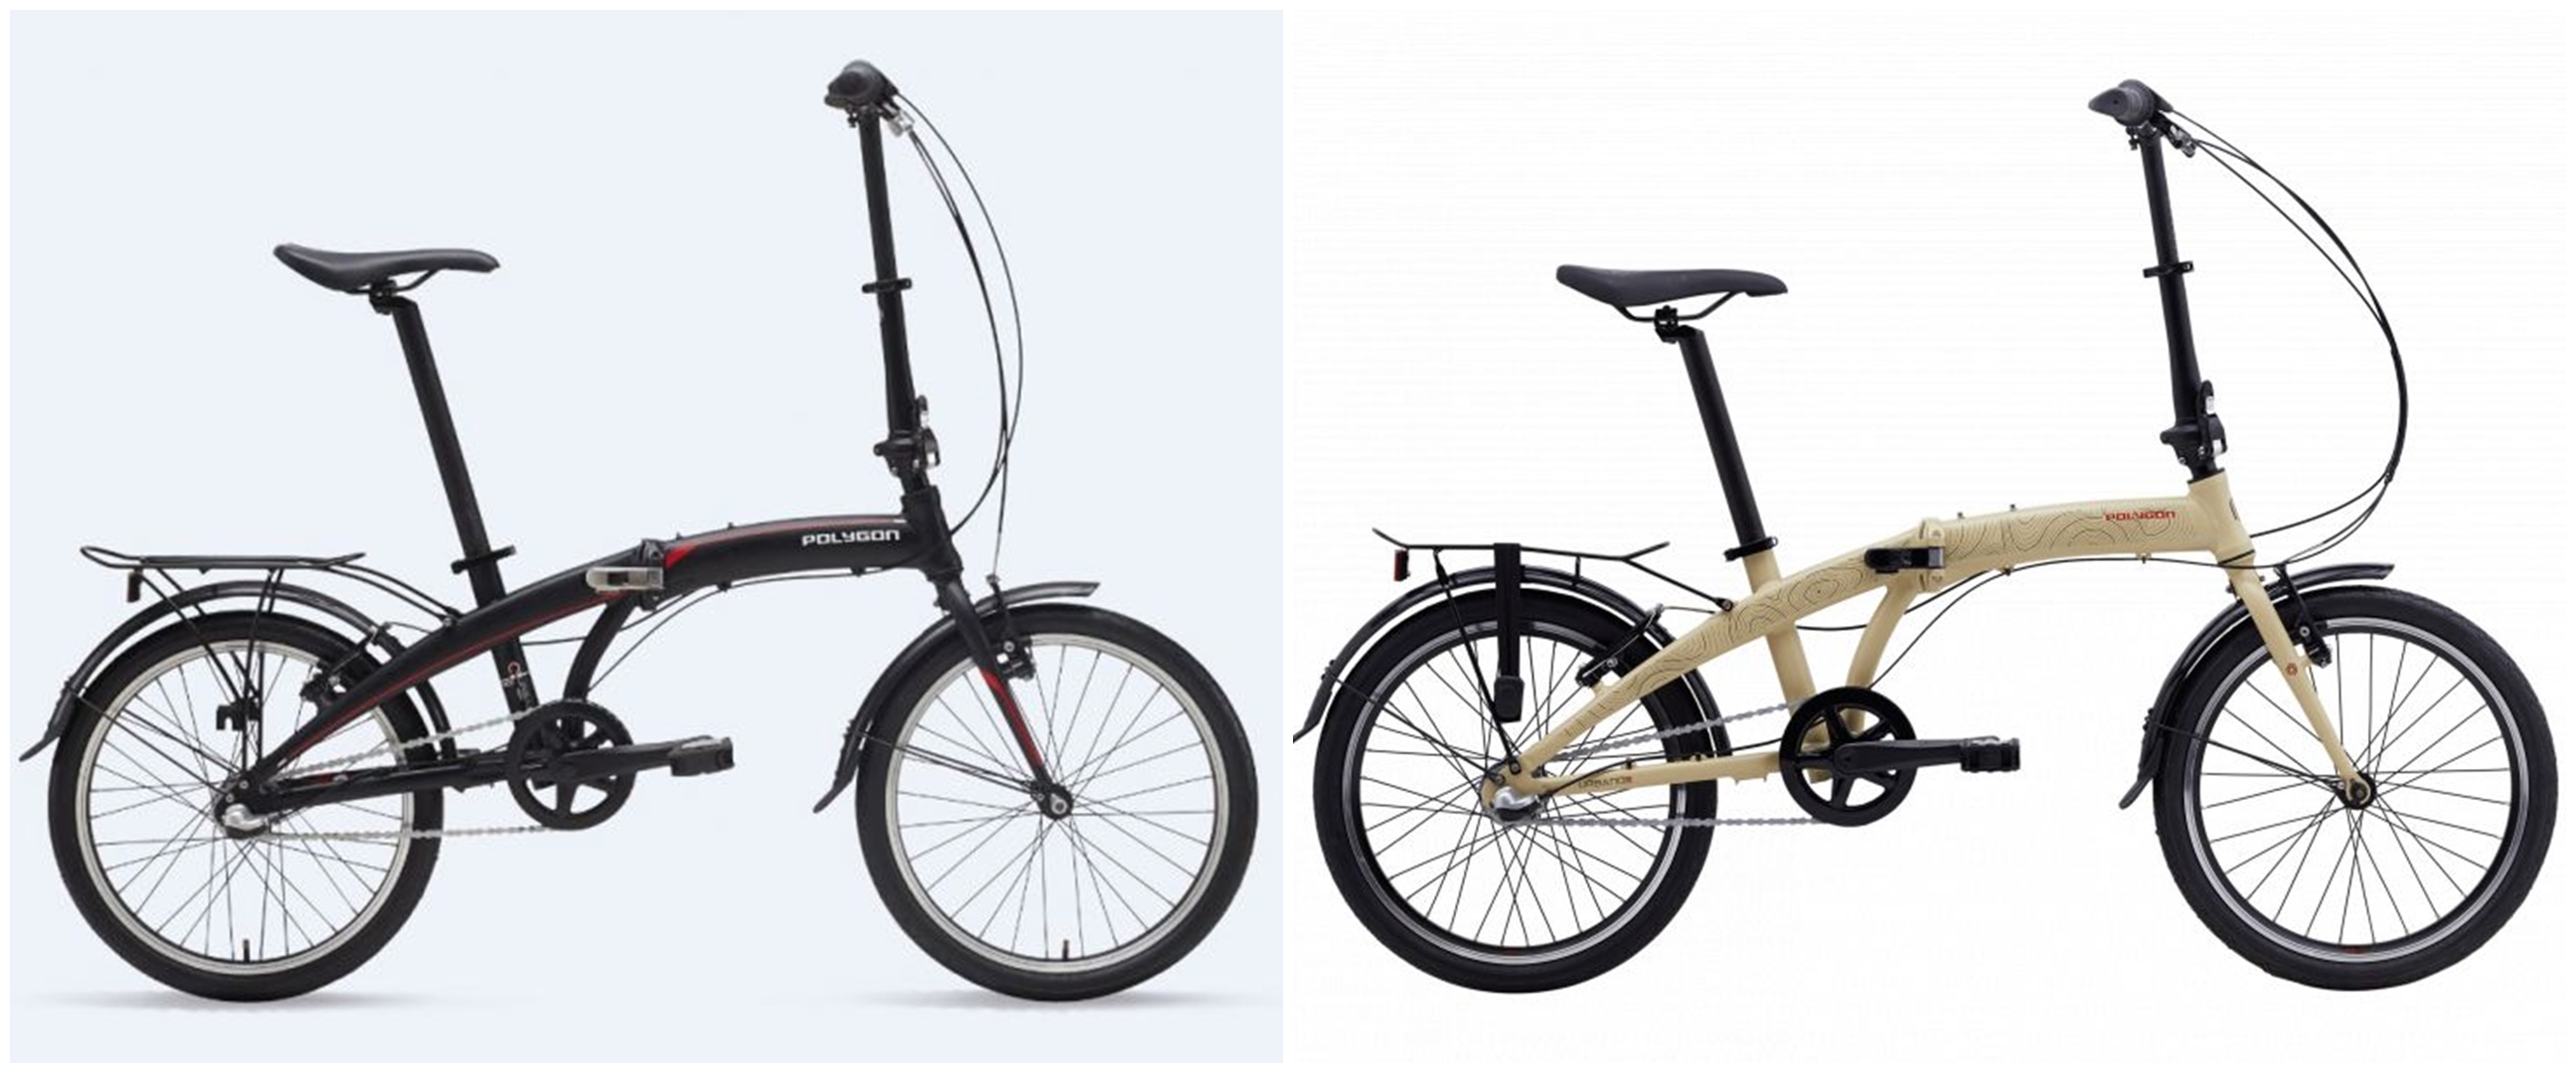 Harga sepeda lipat Polygon Urbano I3 dan spesifikasinya